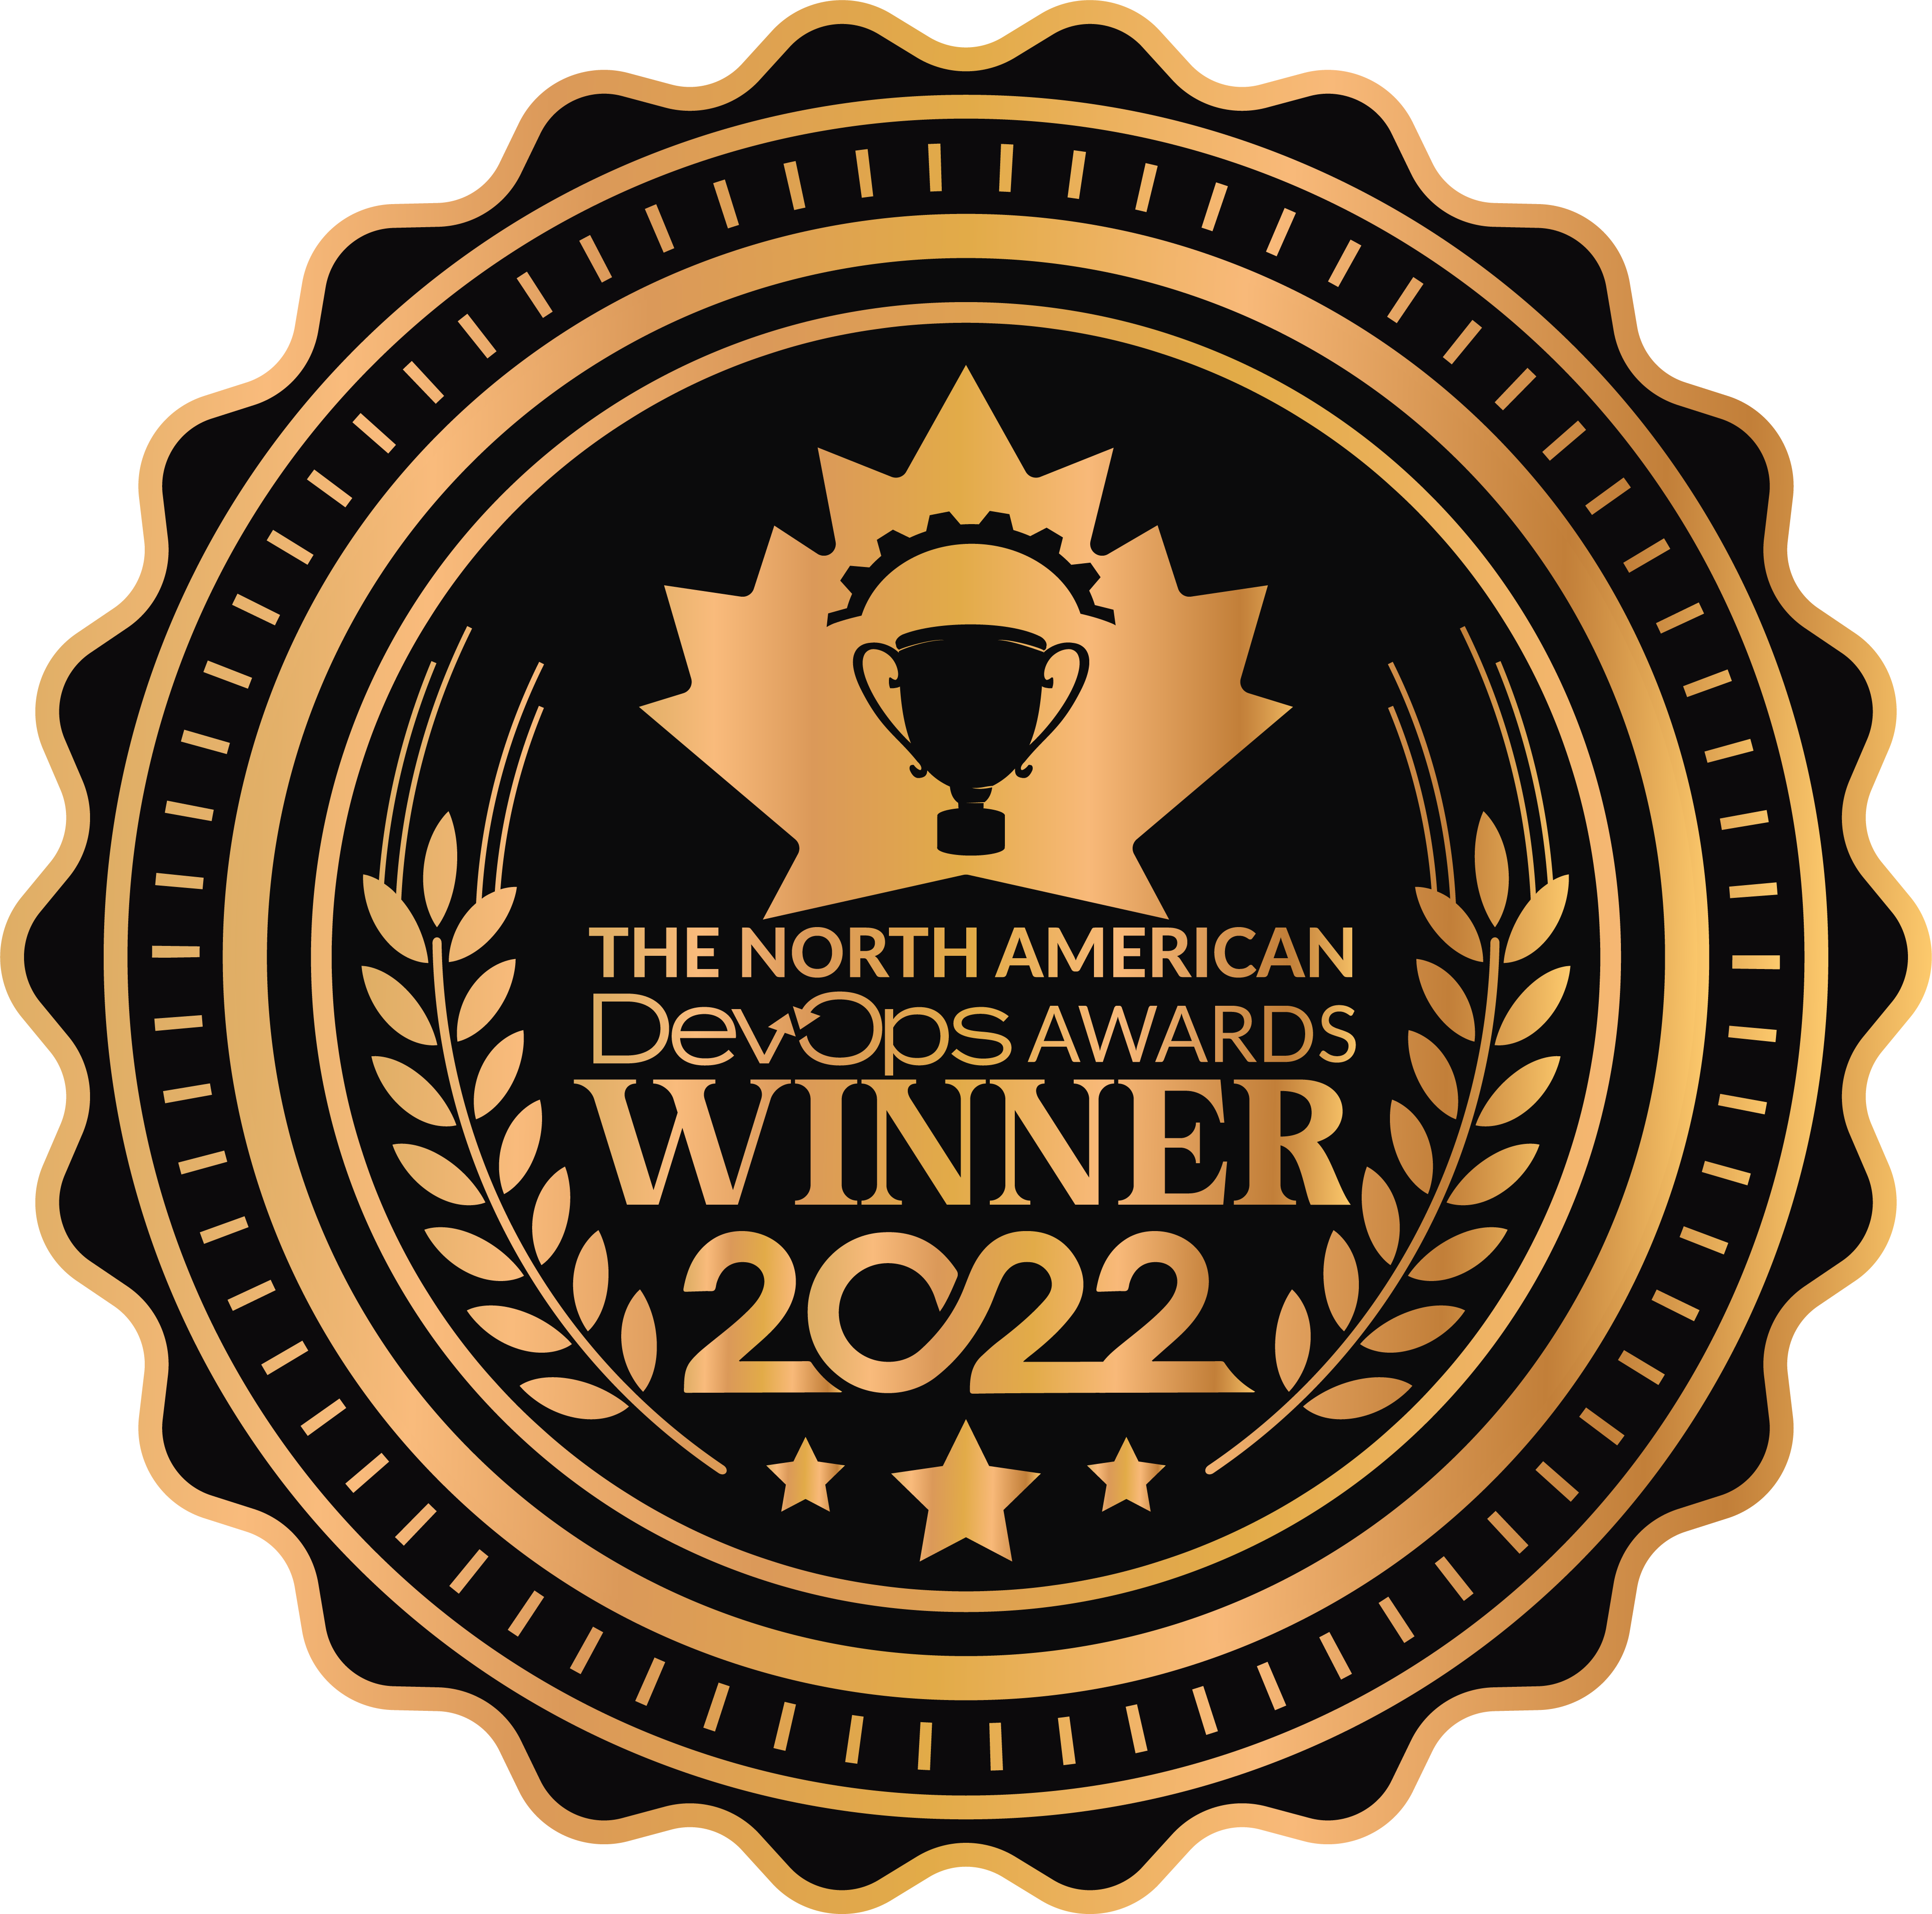 North American DevOpsAwards2022_Winner_Badgedddddddddd